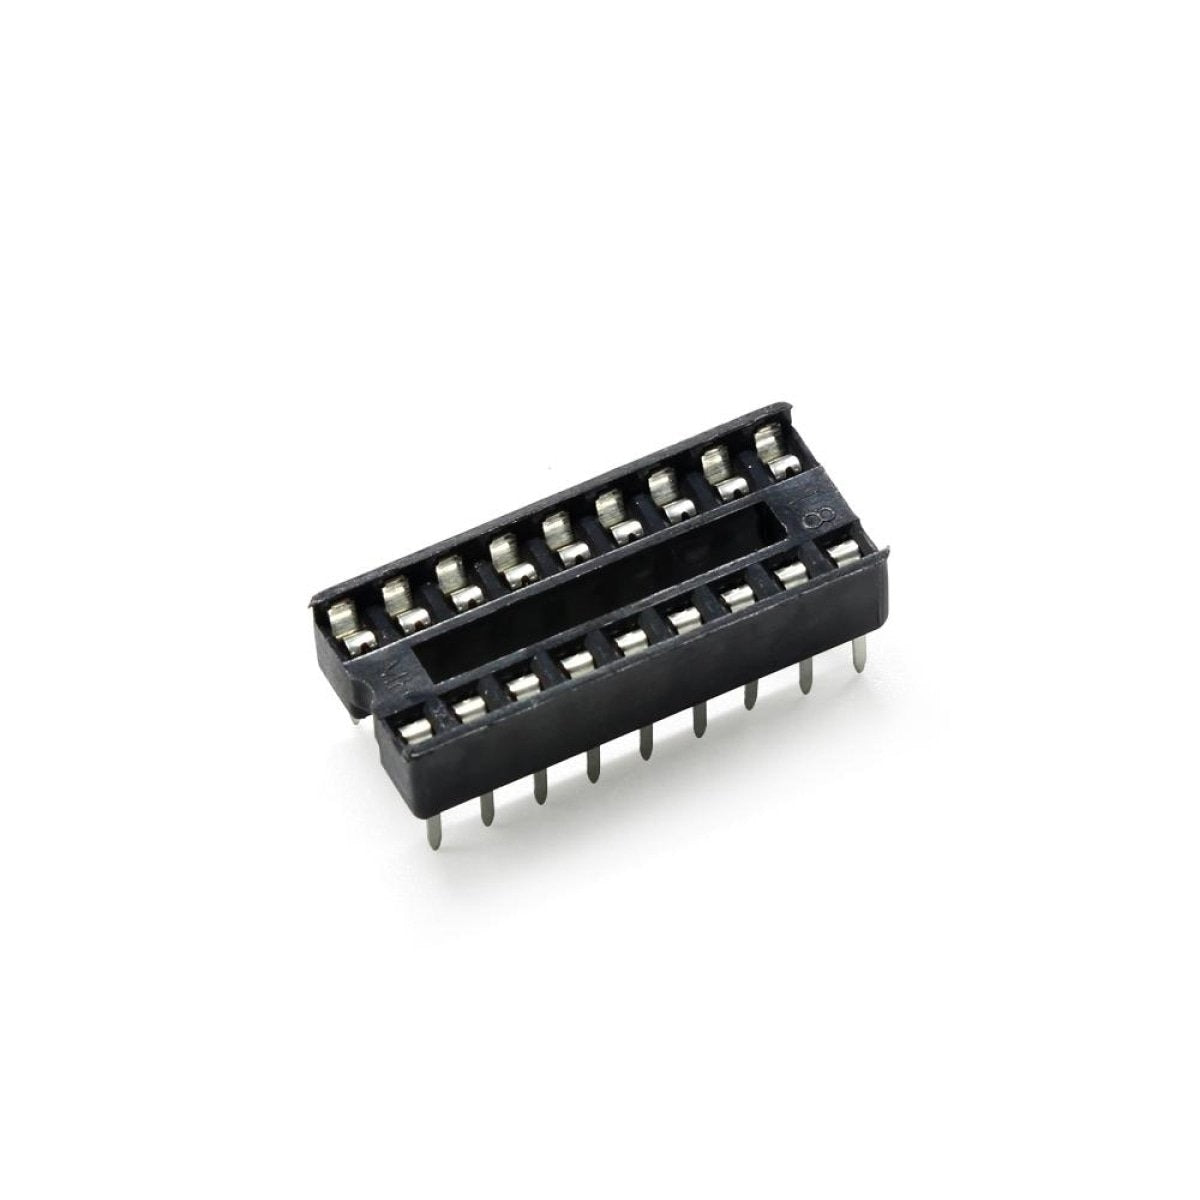 2pcs DIP IC Adaptor Solder Socket 6, 8, 14, 16, 18, 20, 24, 28, 32 Pin - 18 pins - - Asia Sell